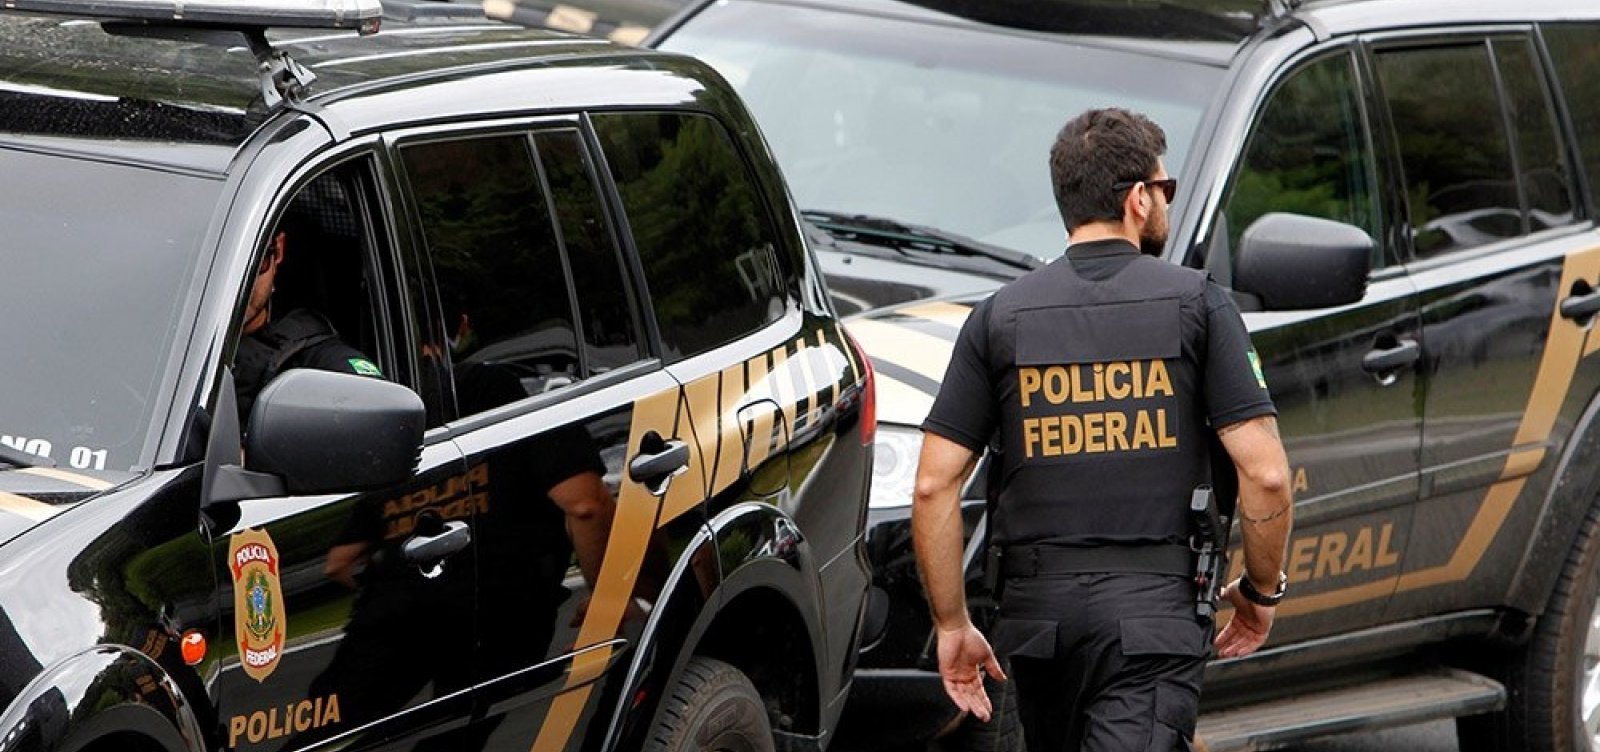 Polícia Federal prende em Salvador estrangeiro procurado por furtos e fraudes em Portugal